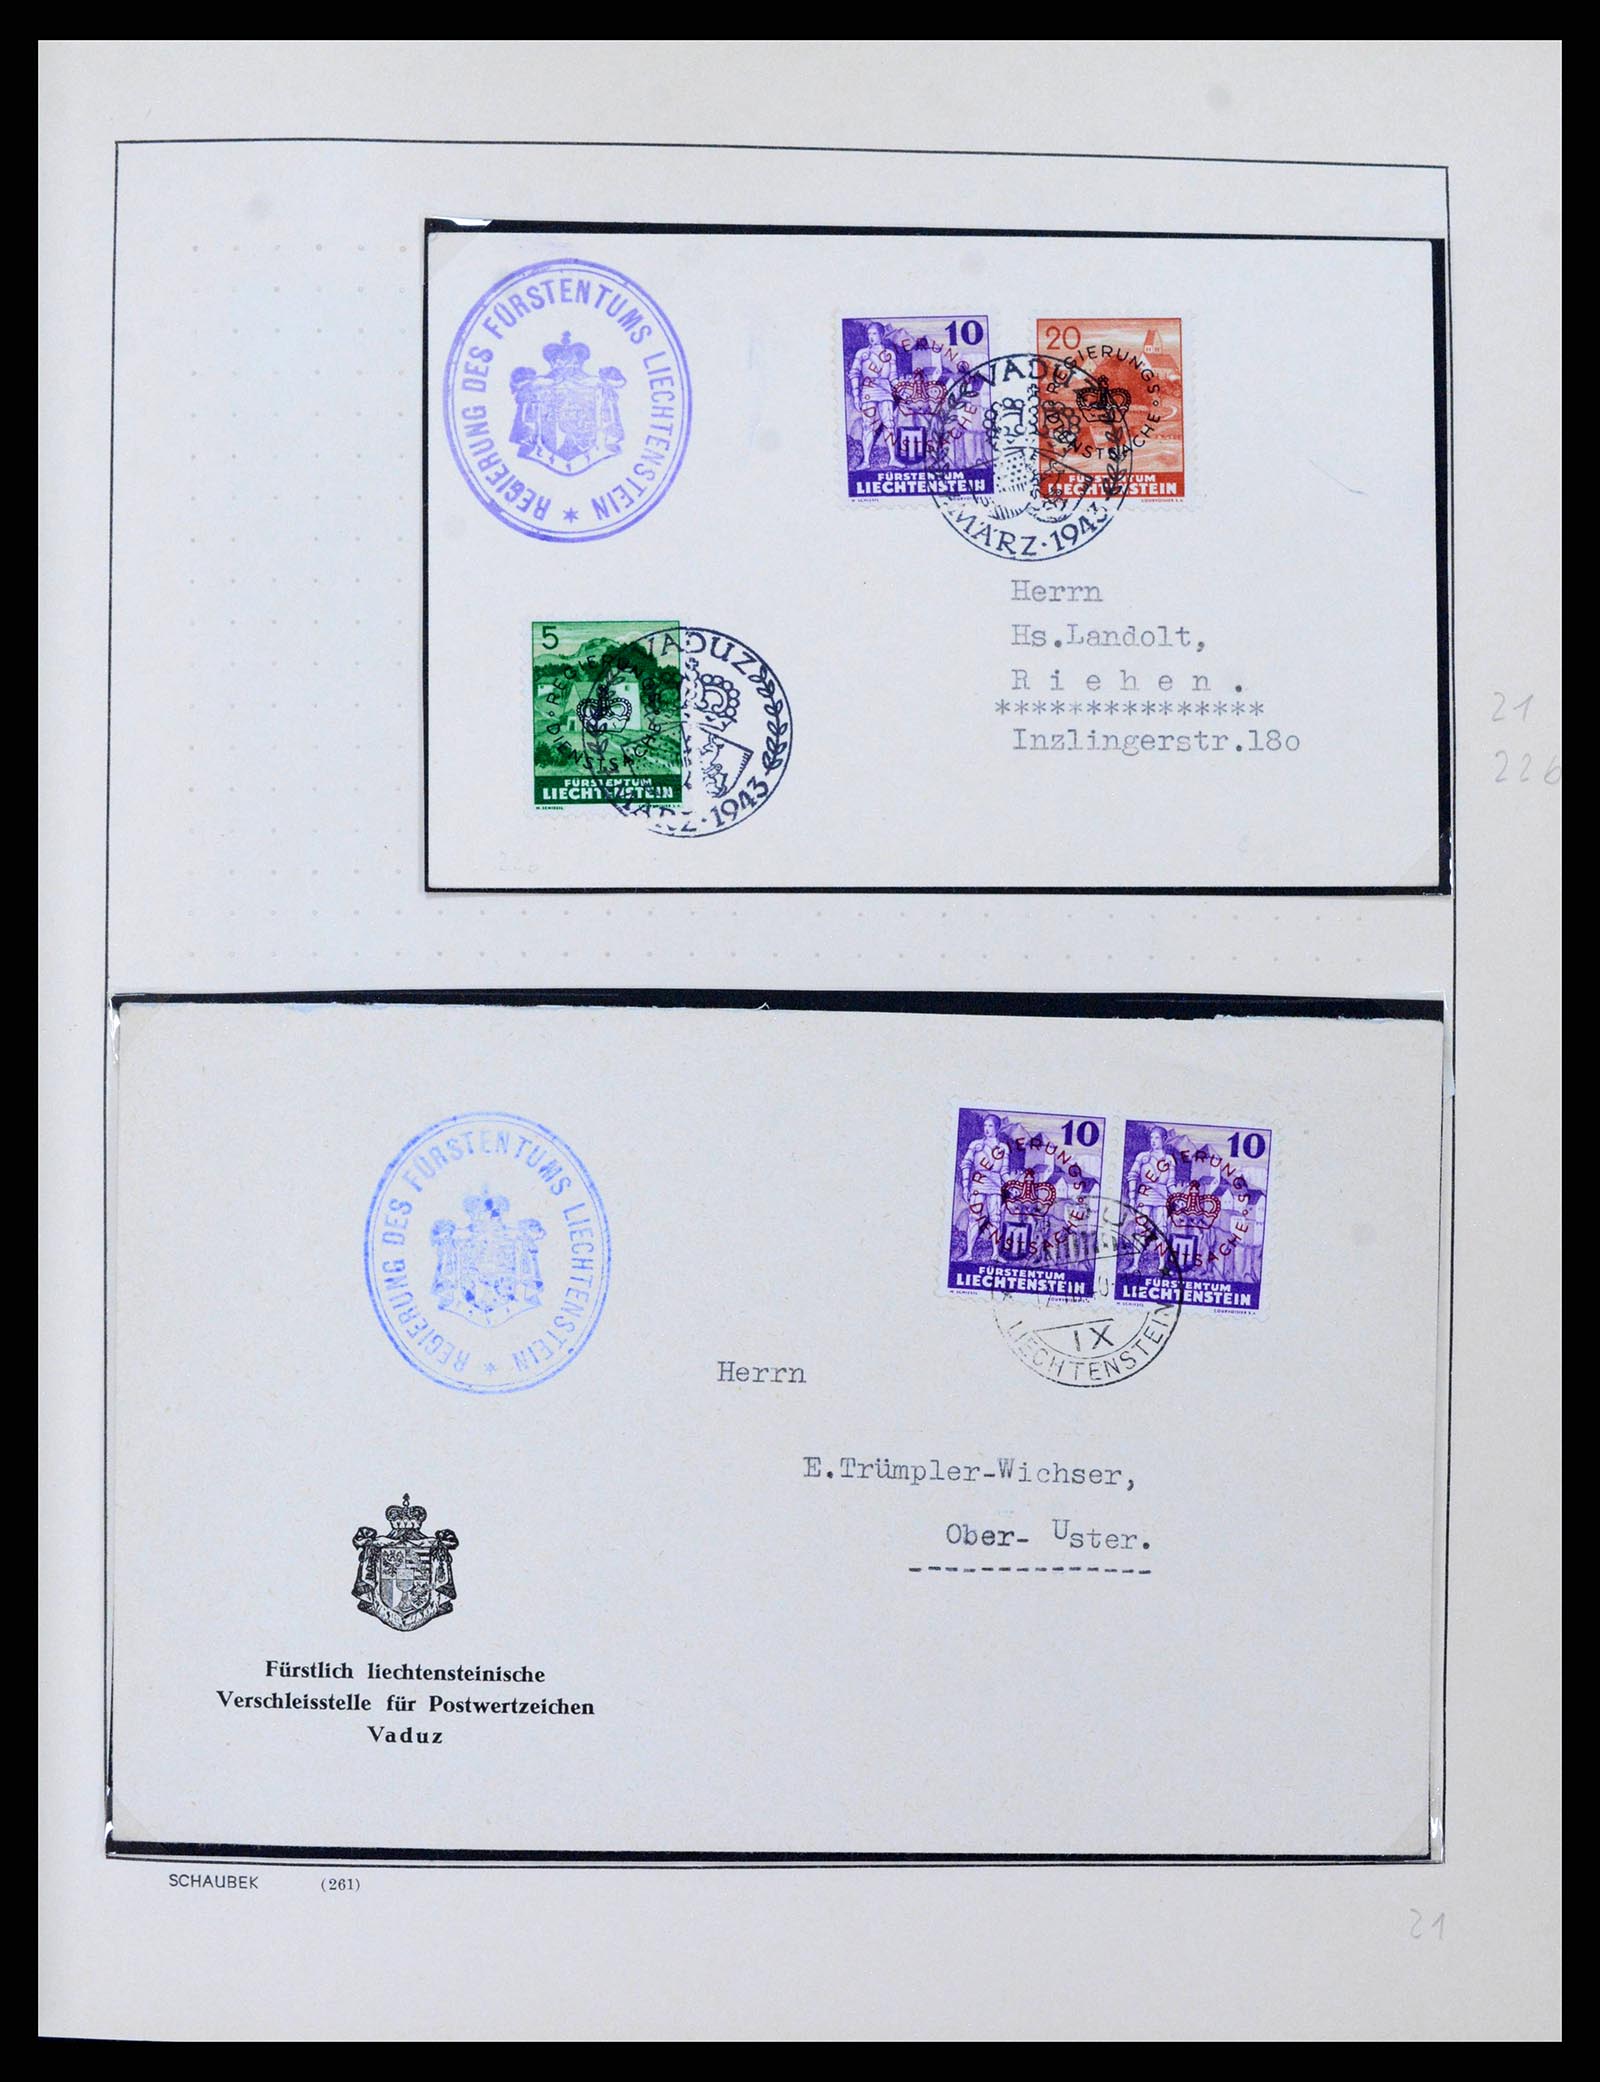 38204 0018 - Stamp collection 38204 Liechtenstein service covers 1932-1989.